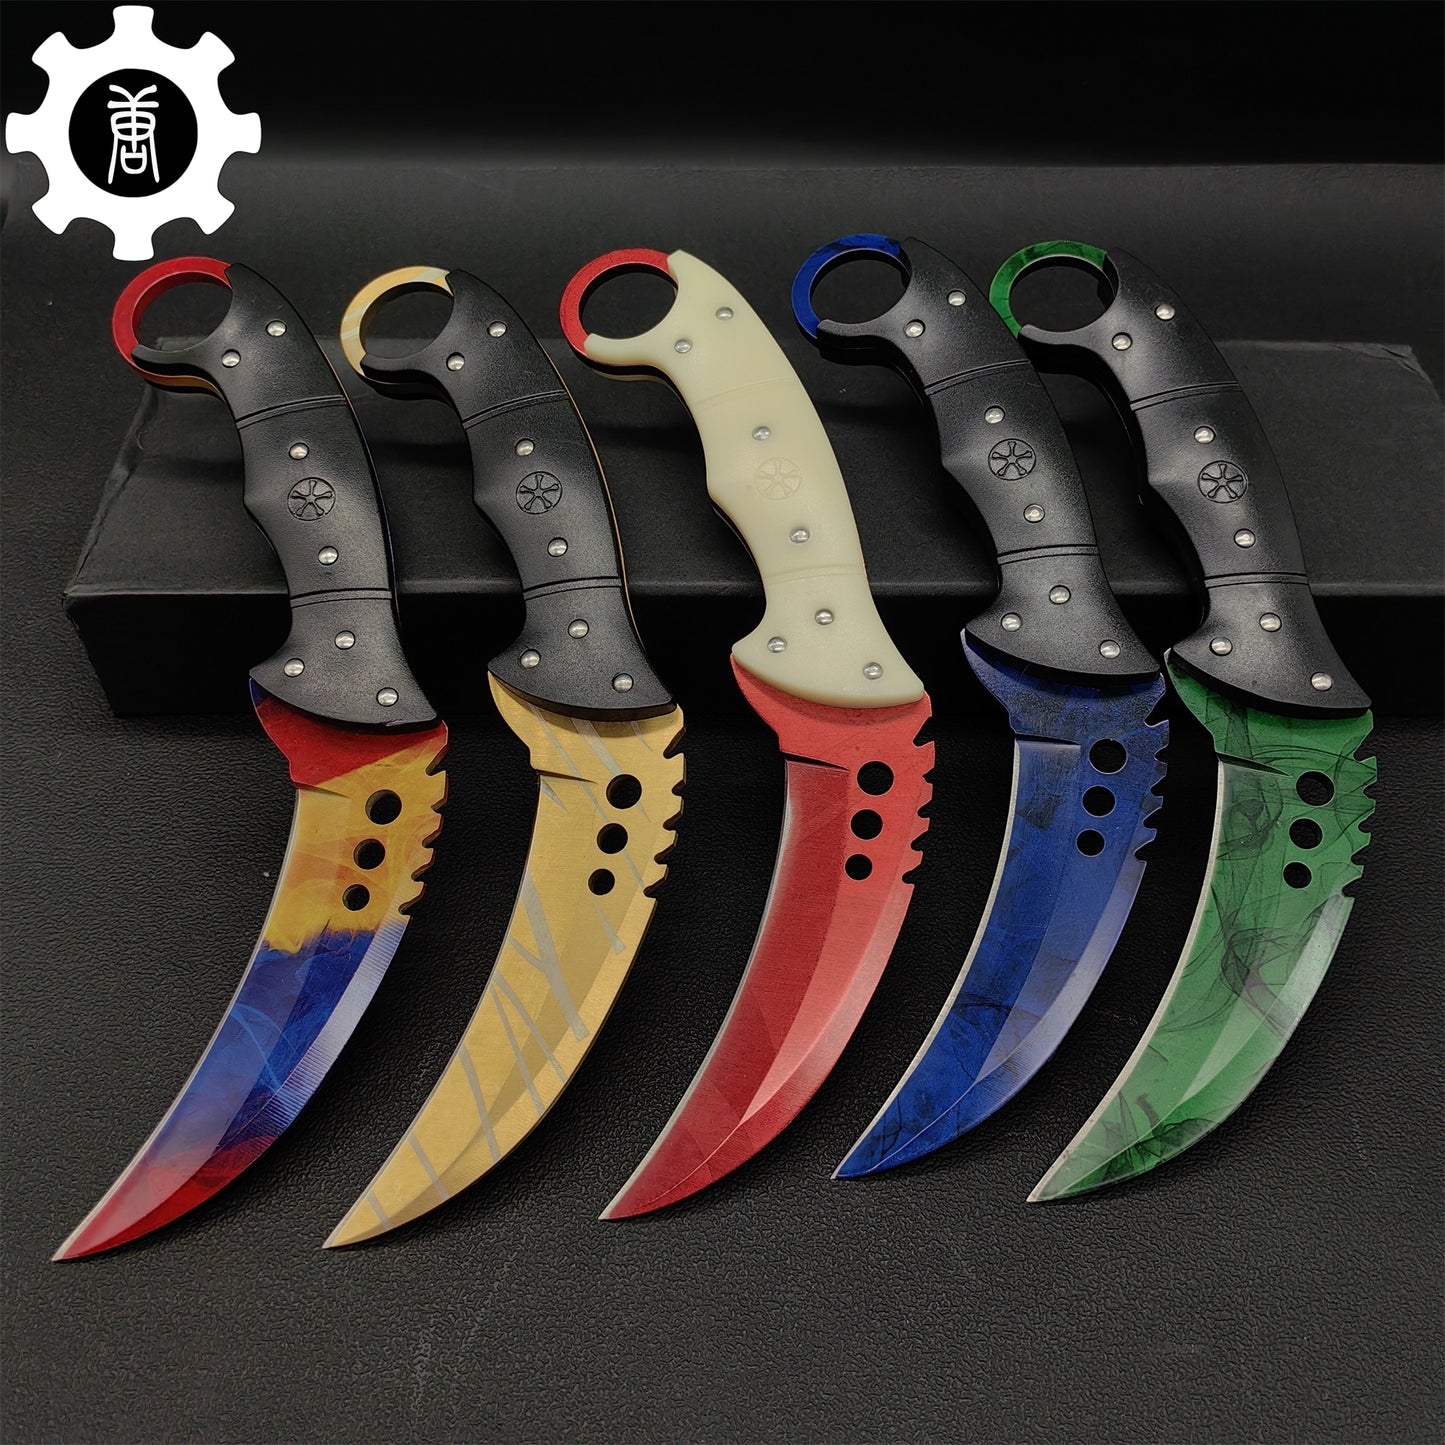 Talon Knife Sharp Blade Knife 5 In 1 Pack